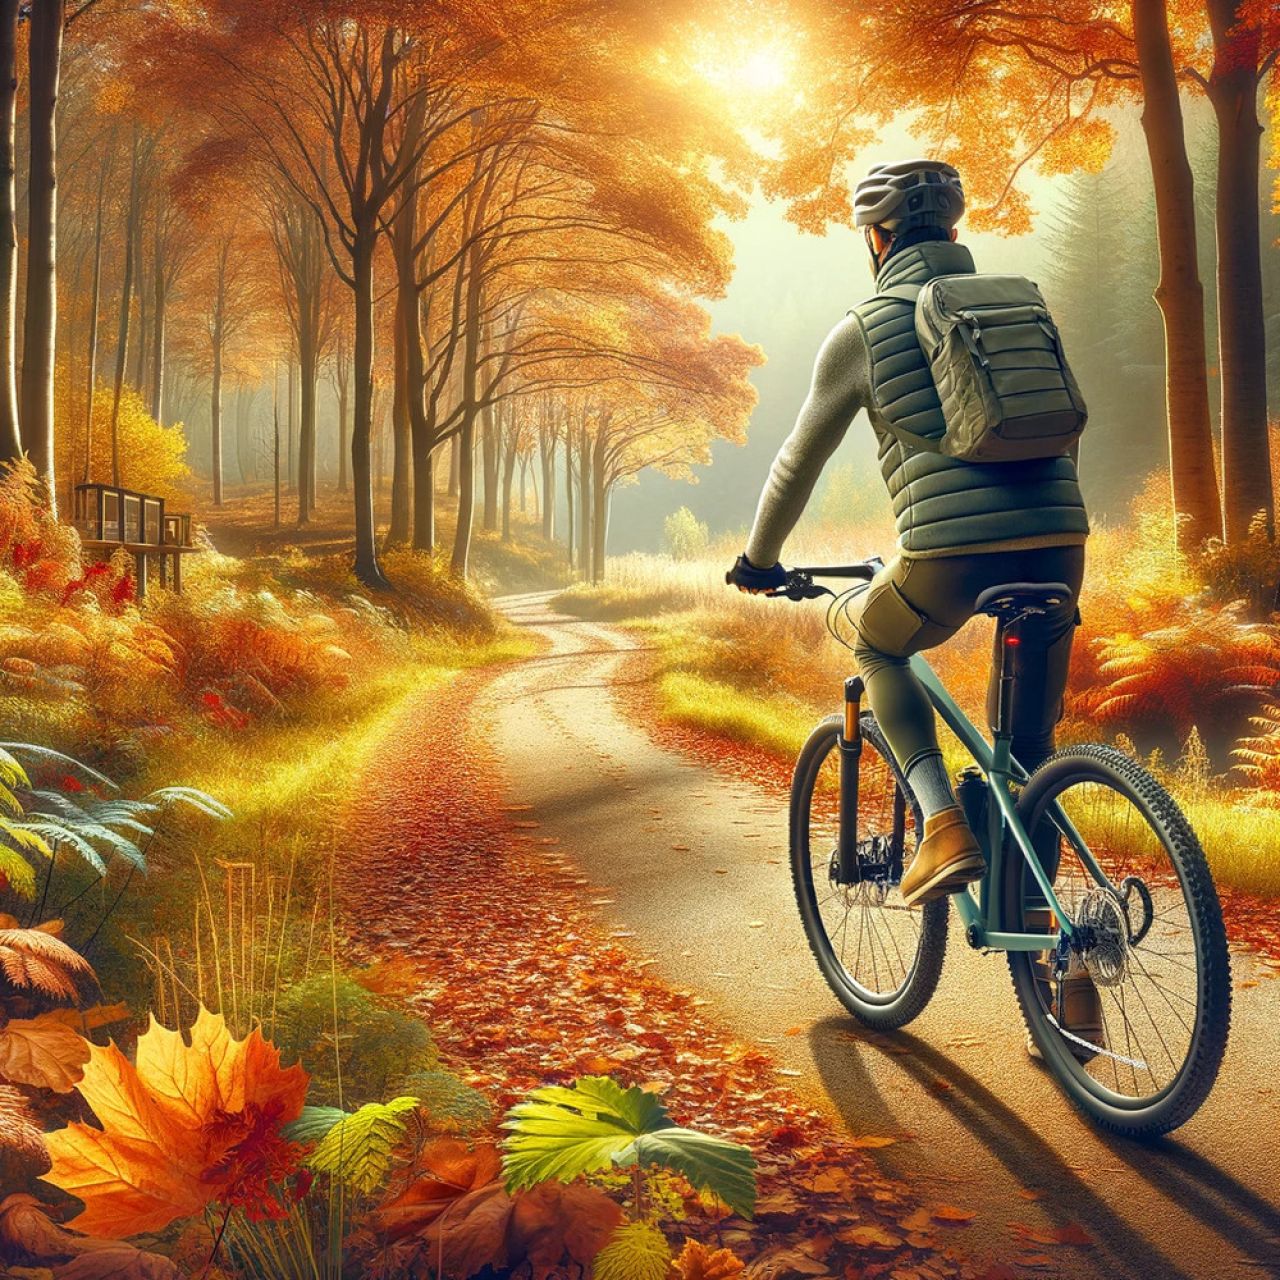 Jak przygotować rower do jazdy jesienią i zimą